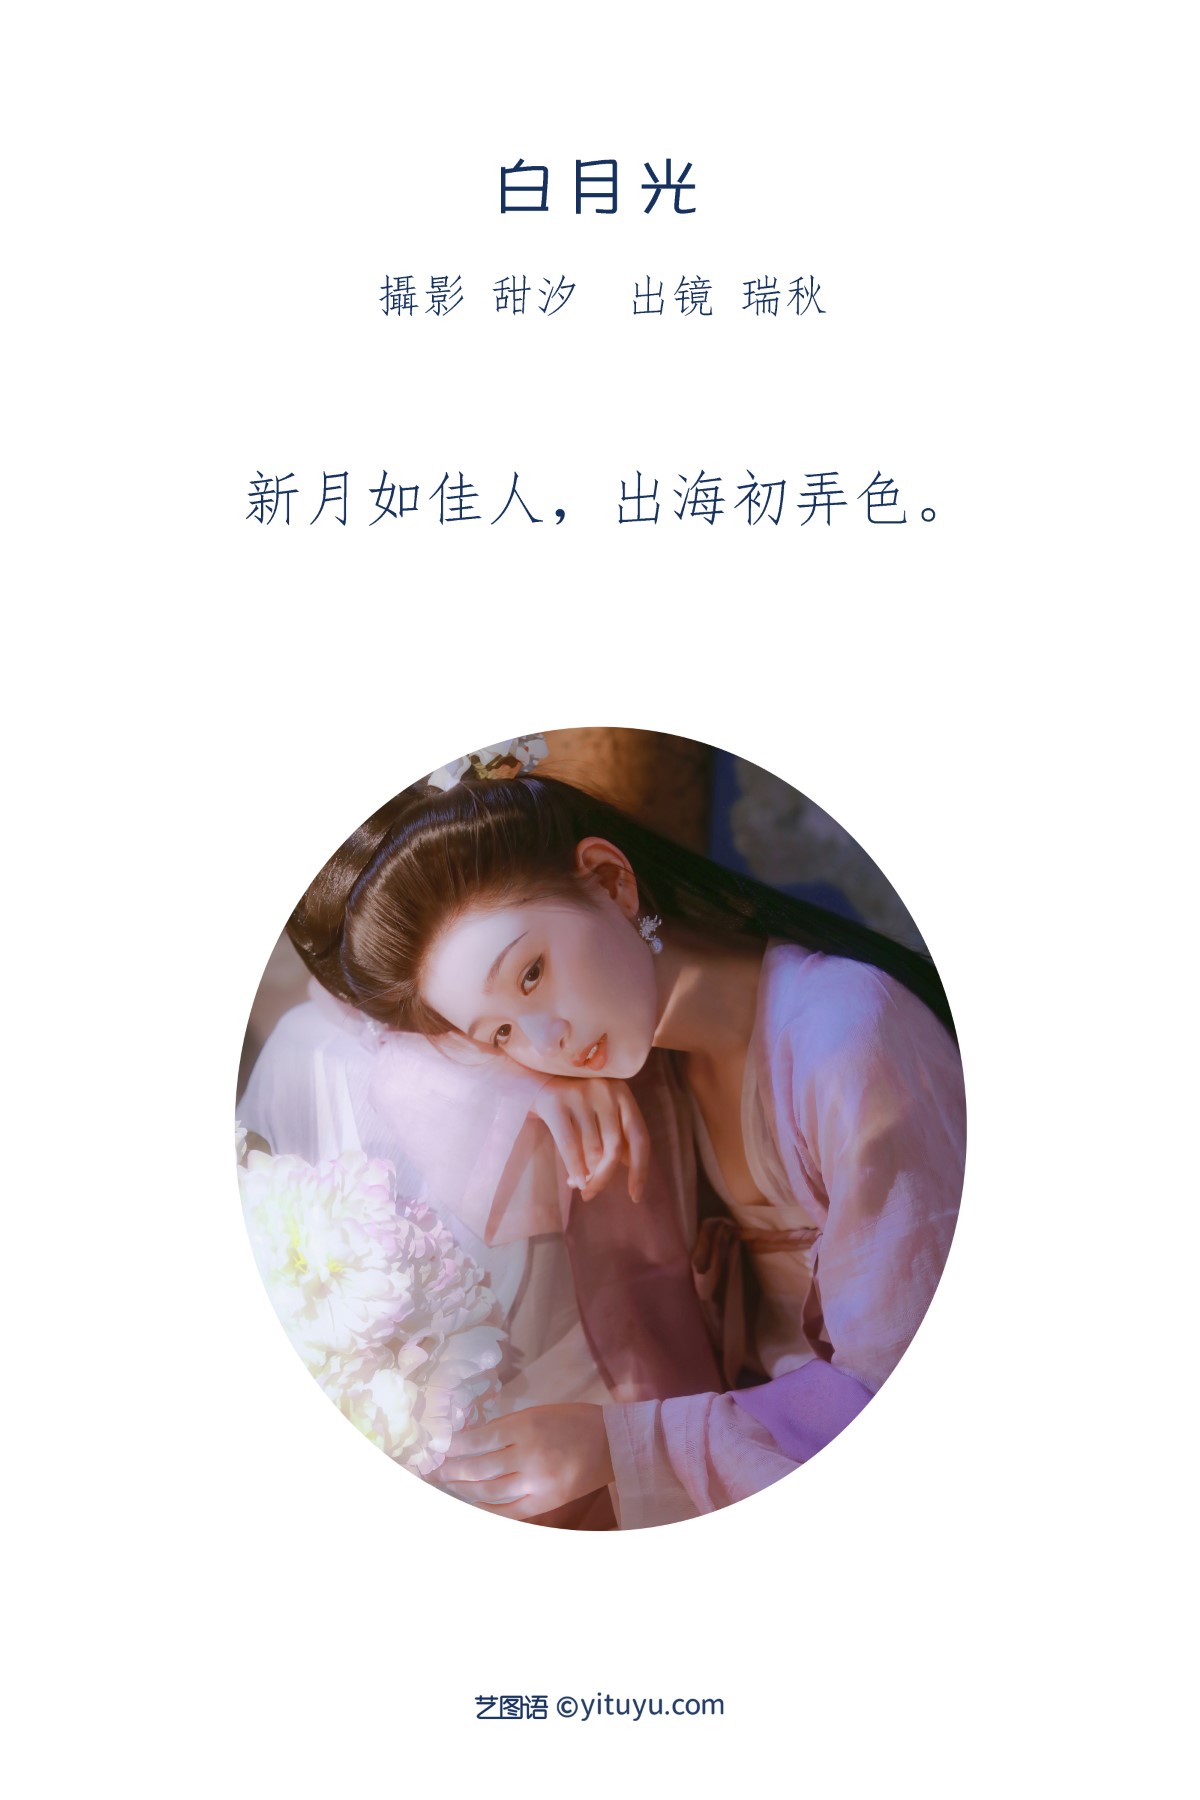 YiTuYu艺图语 Vol 1880 Rui Qiu De Kuai Le Ren Sheng 0001 7835726430.jpg